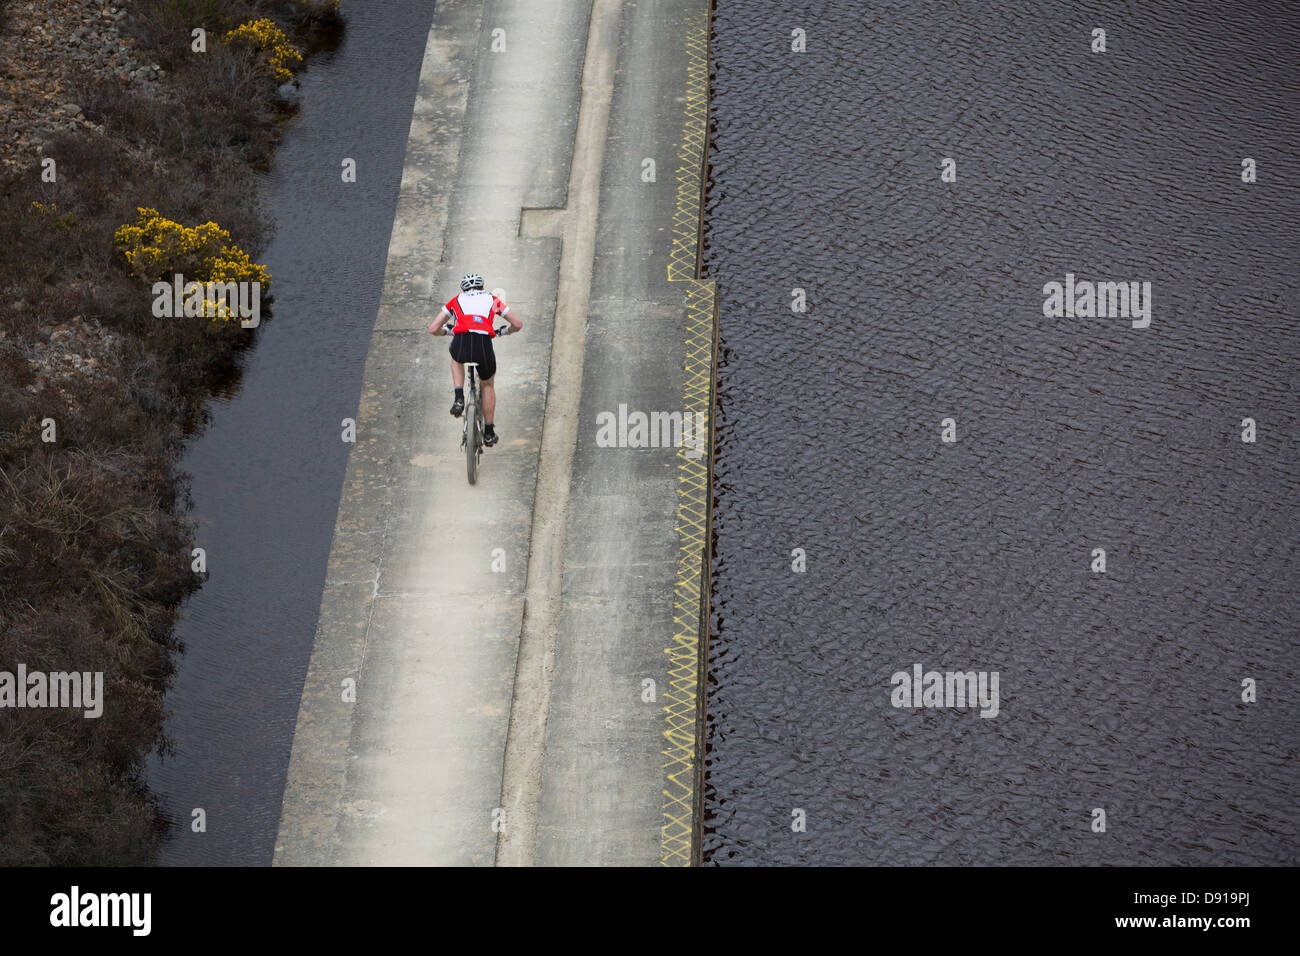 Pápula igual MAYD VALLE, Redruth, Reino Unido. British XC circular de la Serie 2, mountain bike carrera de cross country. Un ciclista cruzar un puente de hormigón. Foto de stock